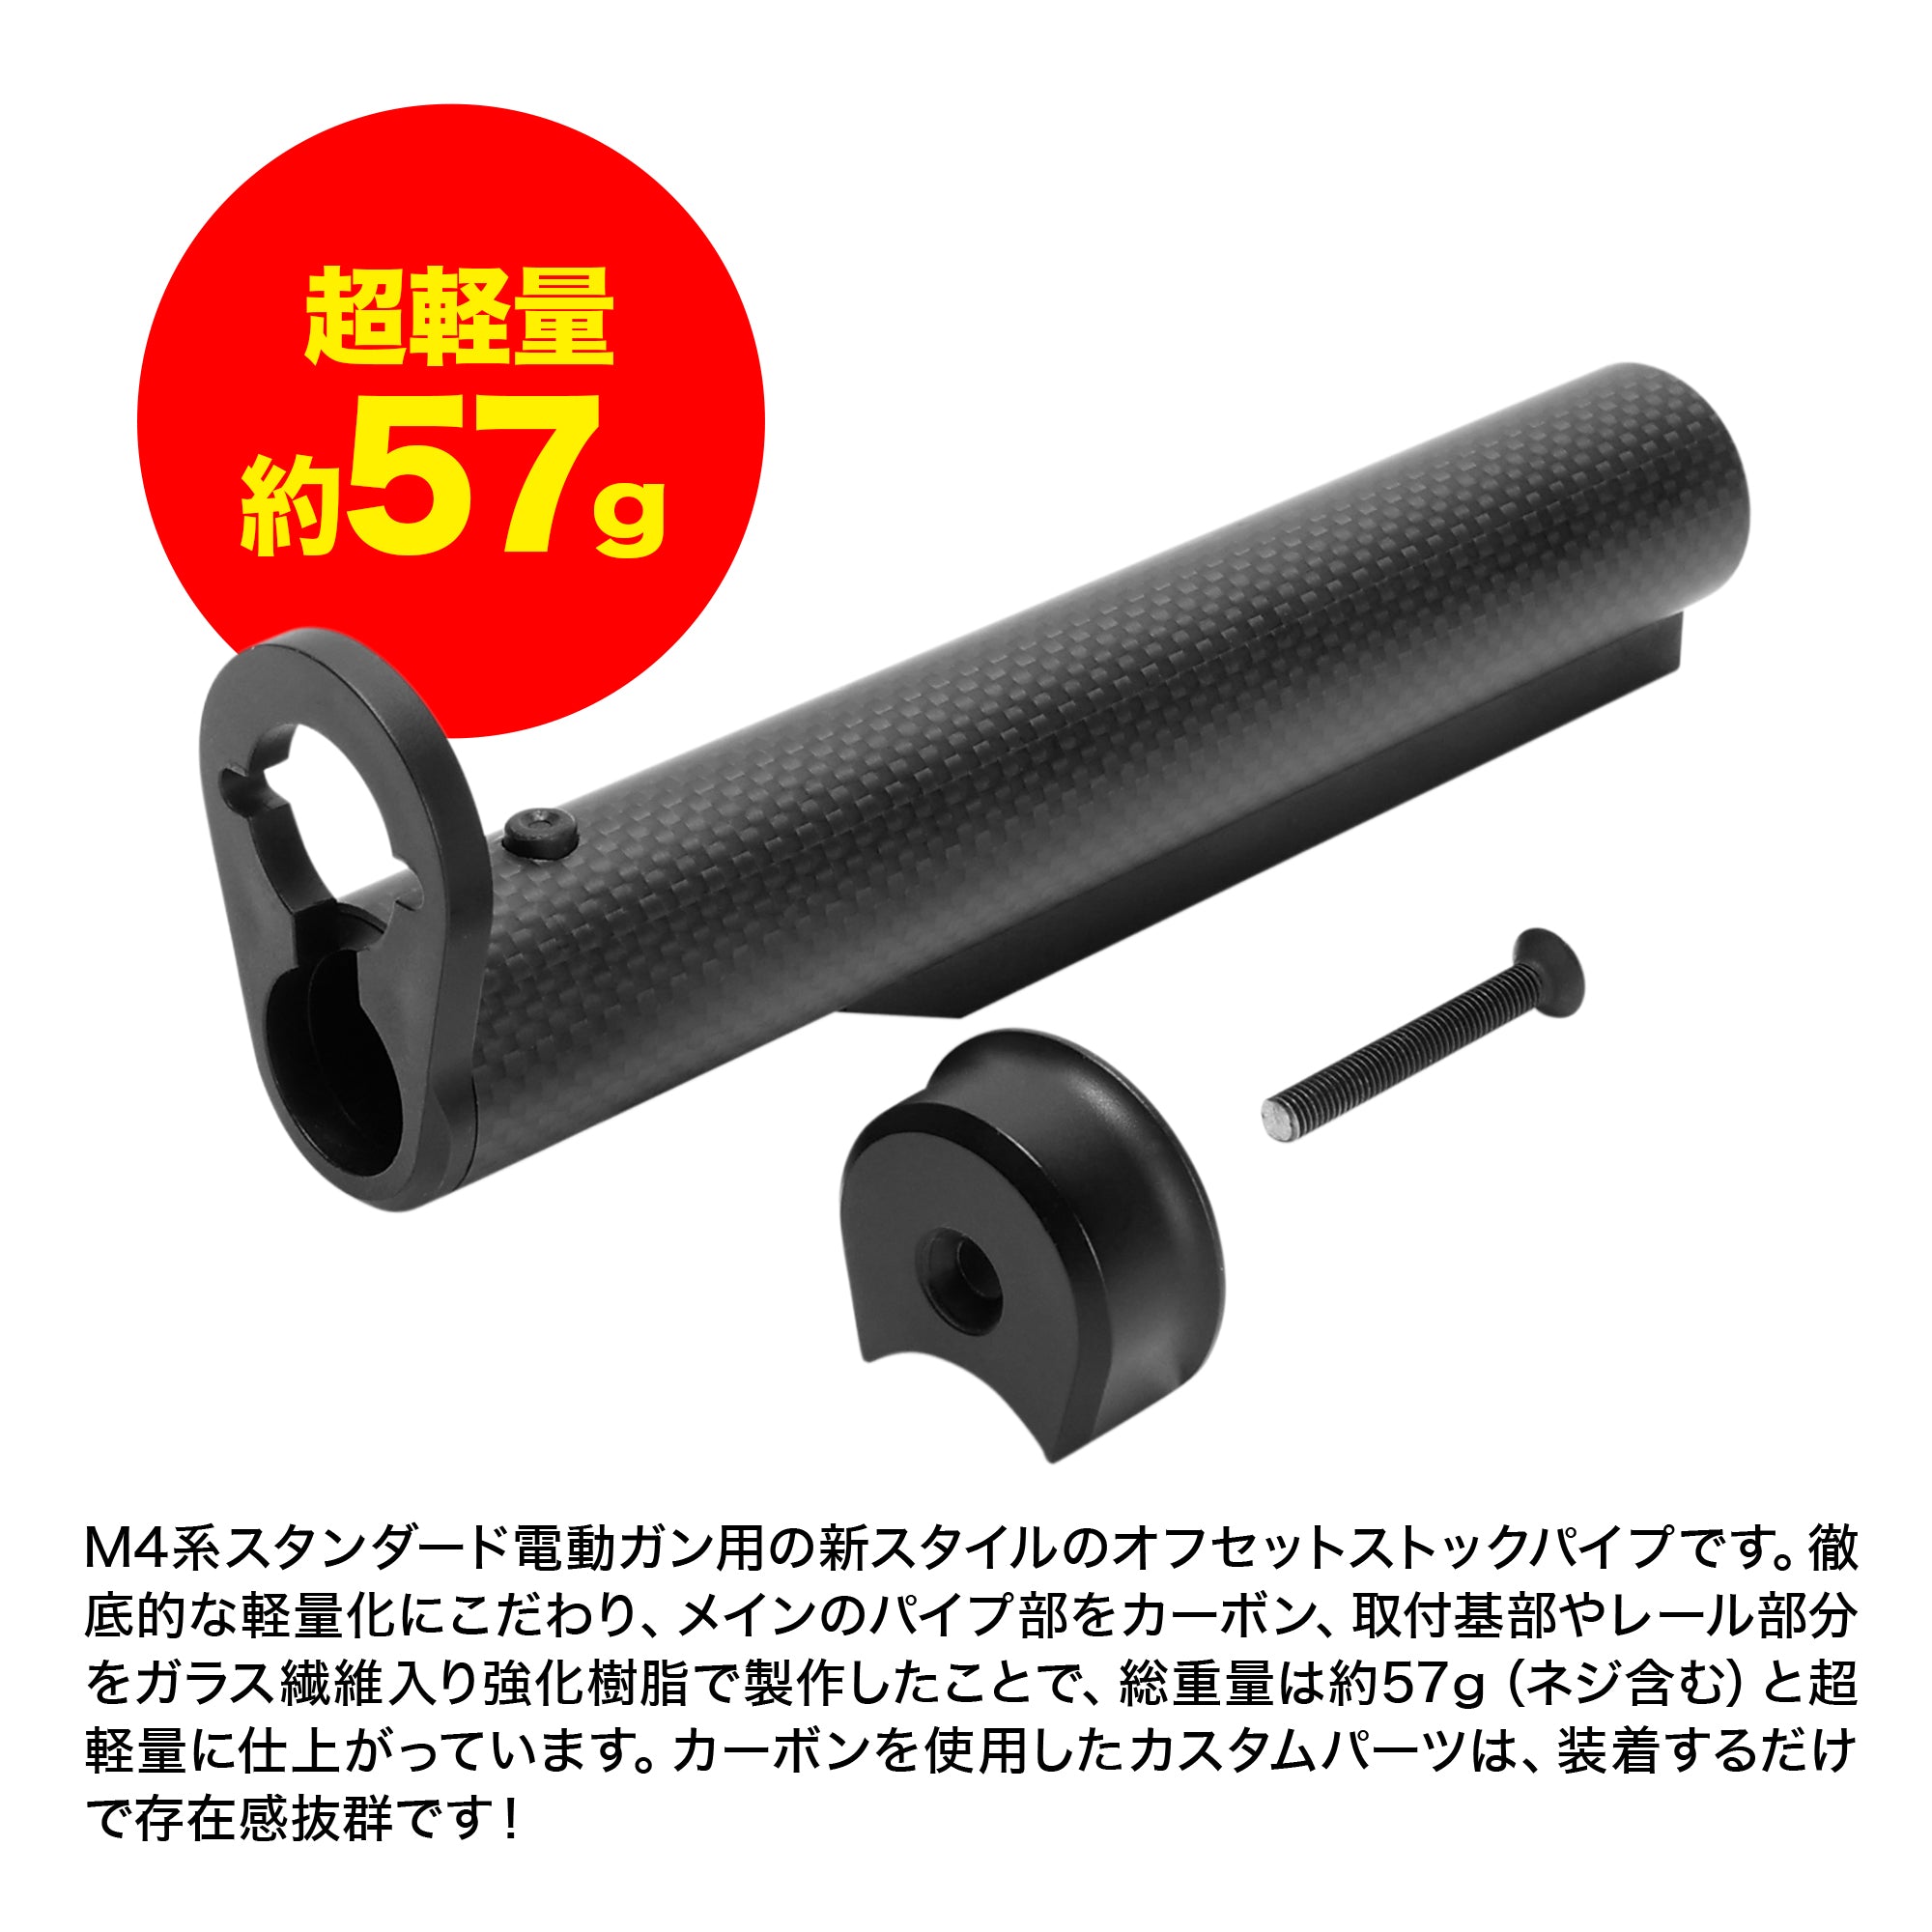 M4オフセットクイックリリースカーボンストックパイプ(東京マルイ電動ガン スタンダードタイプ)[FirstFactory/ファーストファクトリー]